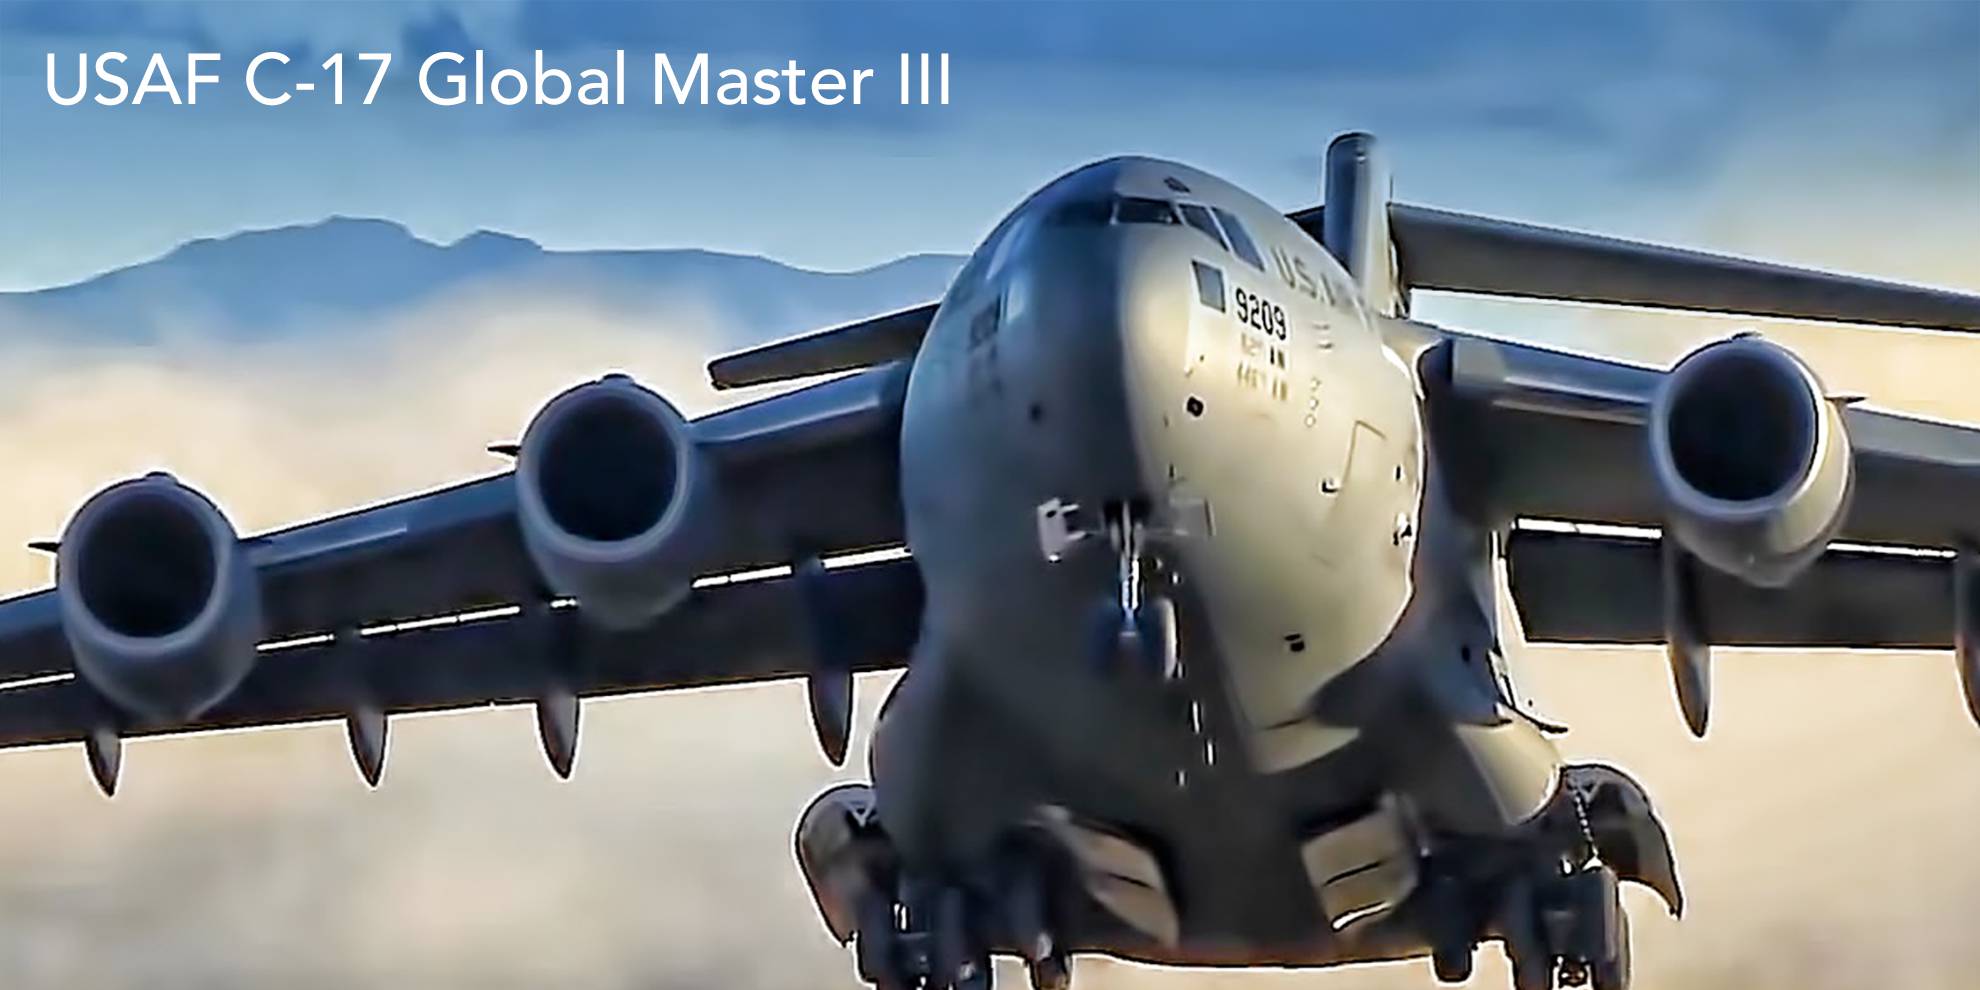 USAF C-17 Global Master III